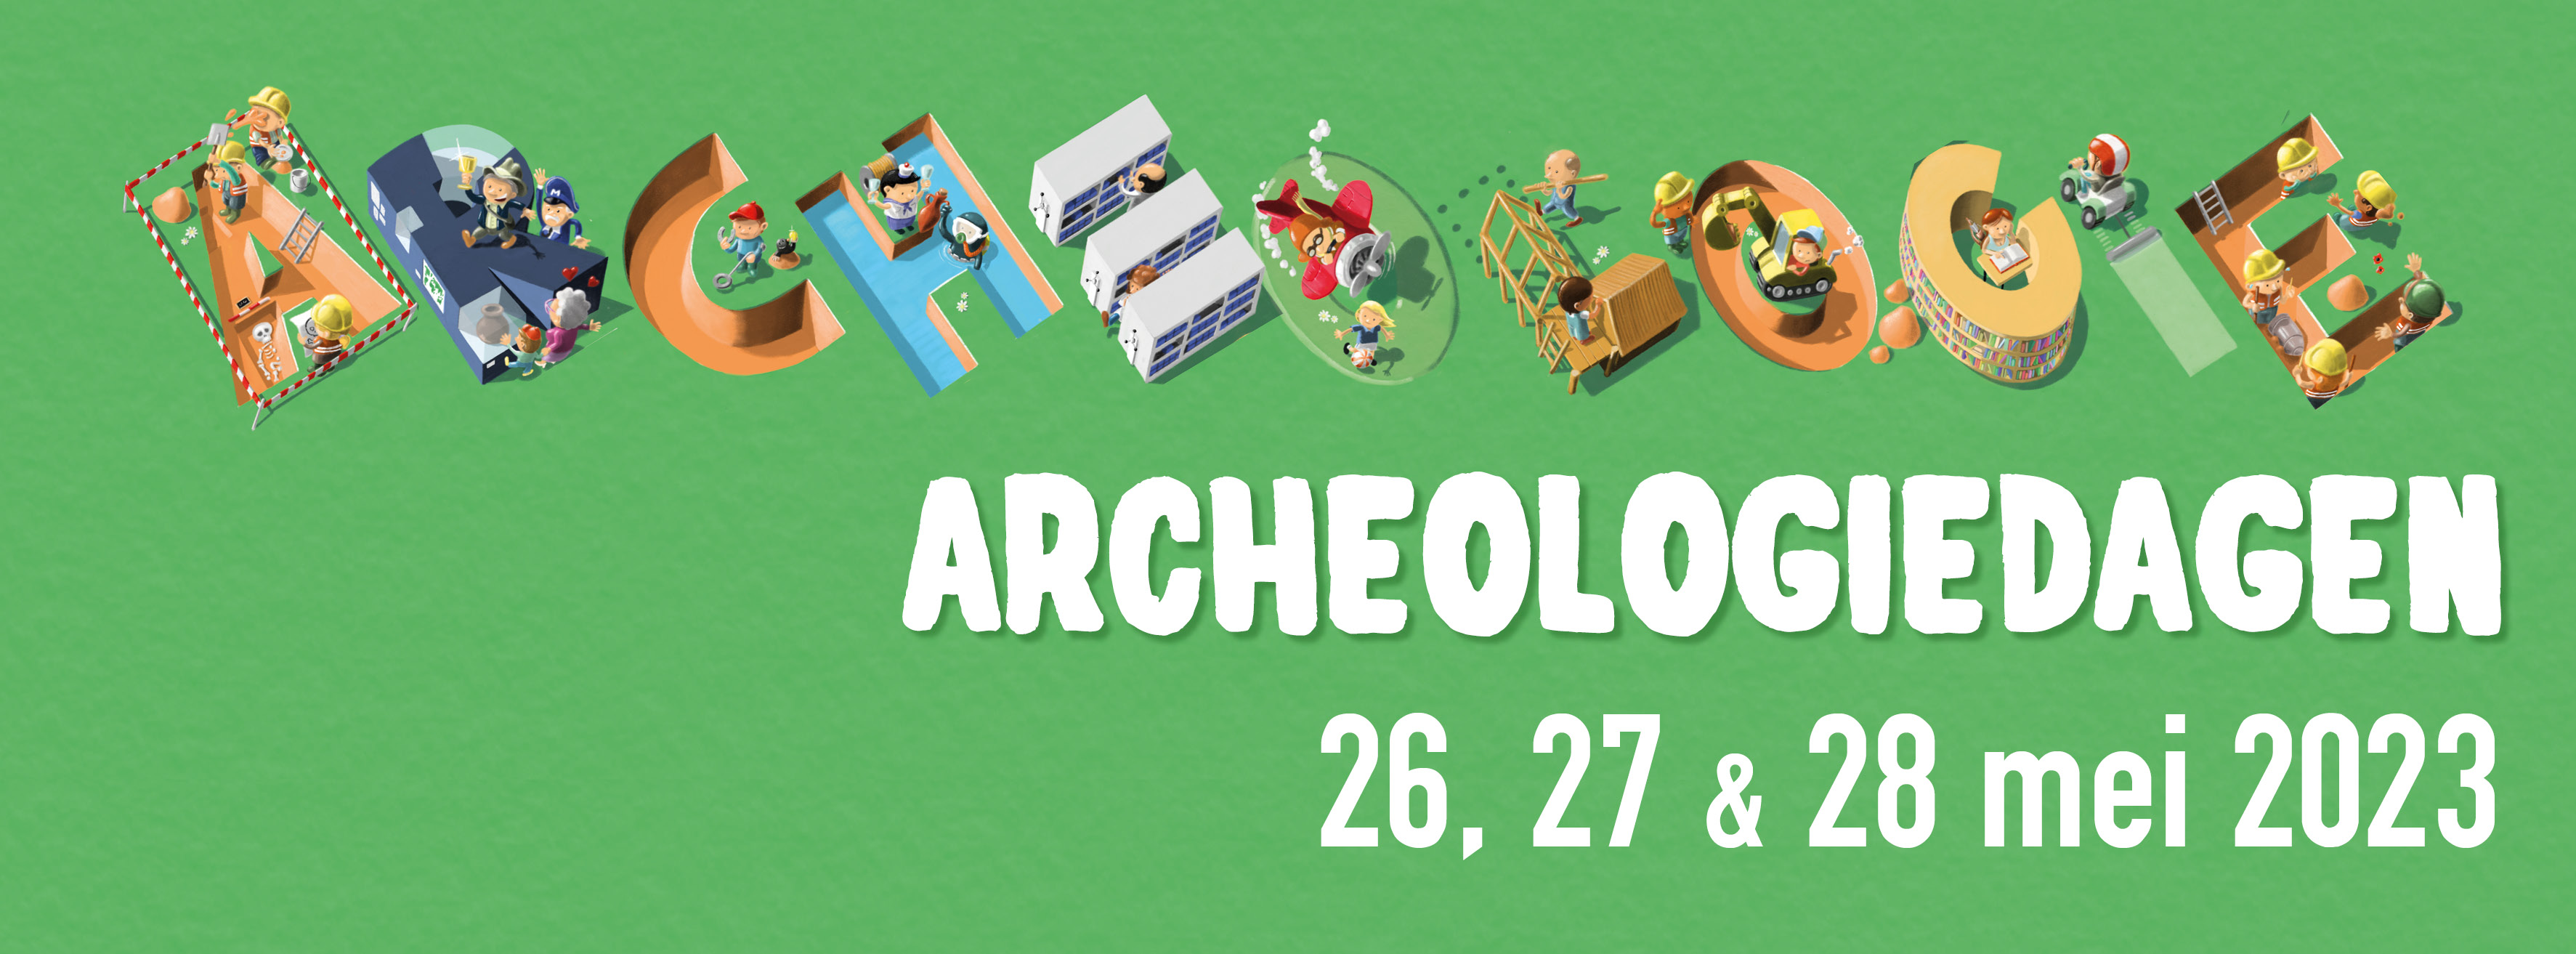 Deze Archeologiedagen kan je gratis naar het Regionaal Archeologisch Museum!